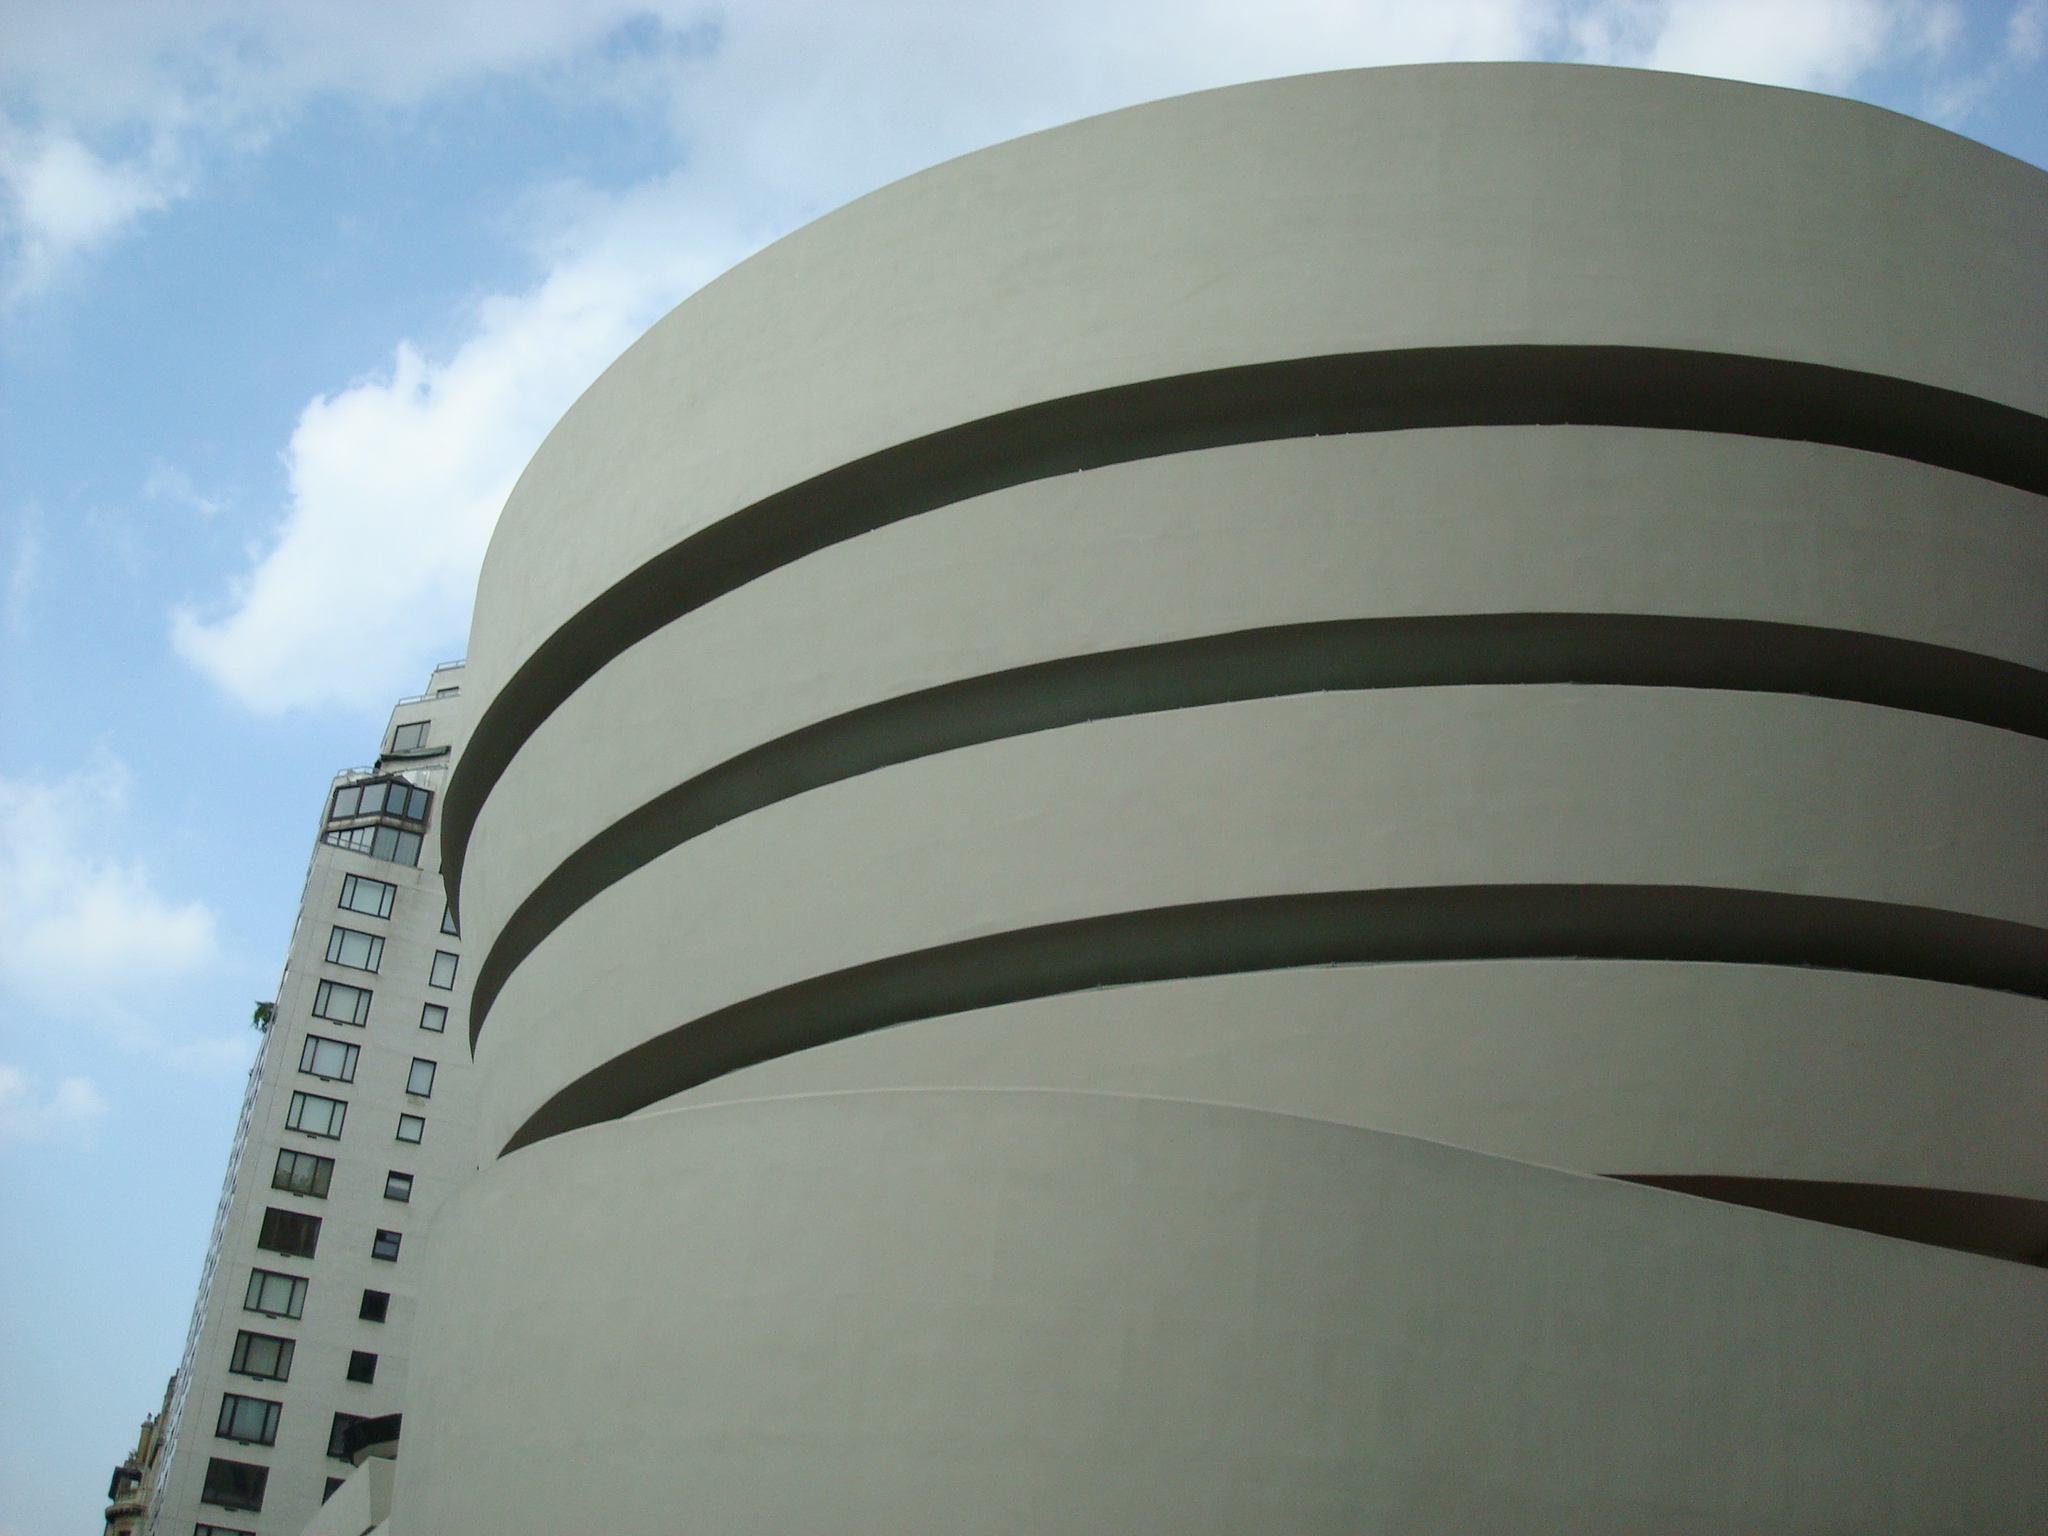 Guggenheim Museum, NYC